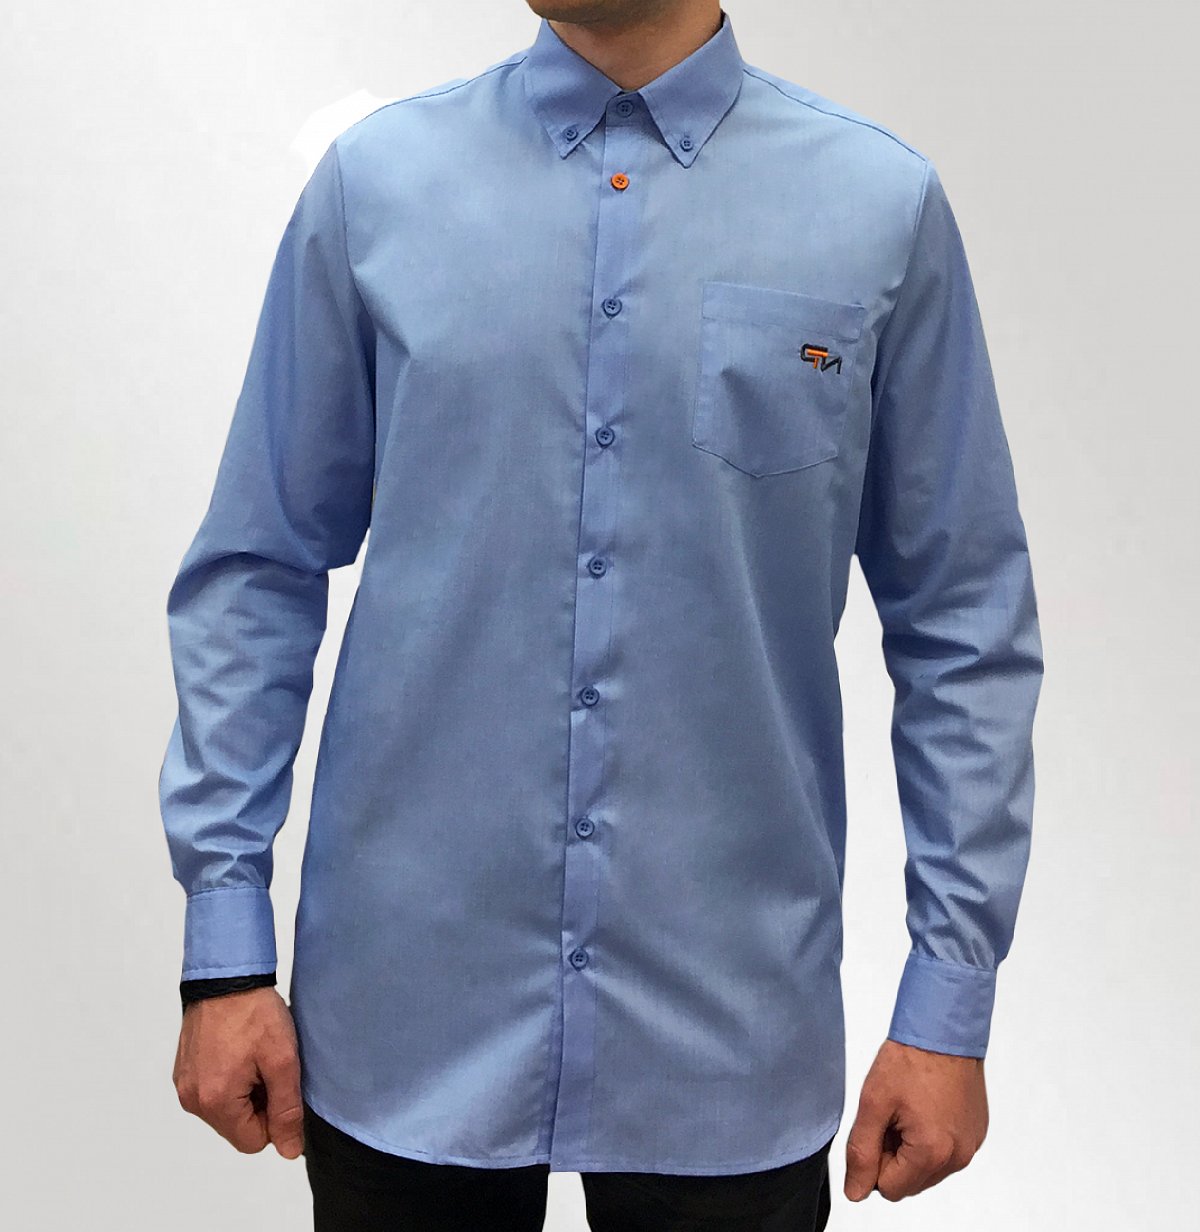 Рубашки с логотипом на заказ  - пример модели синяя рубашка с логотипом